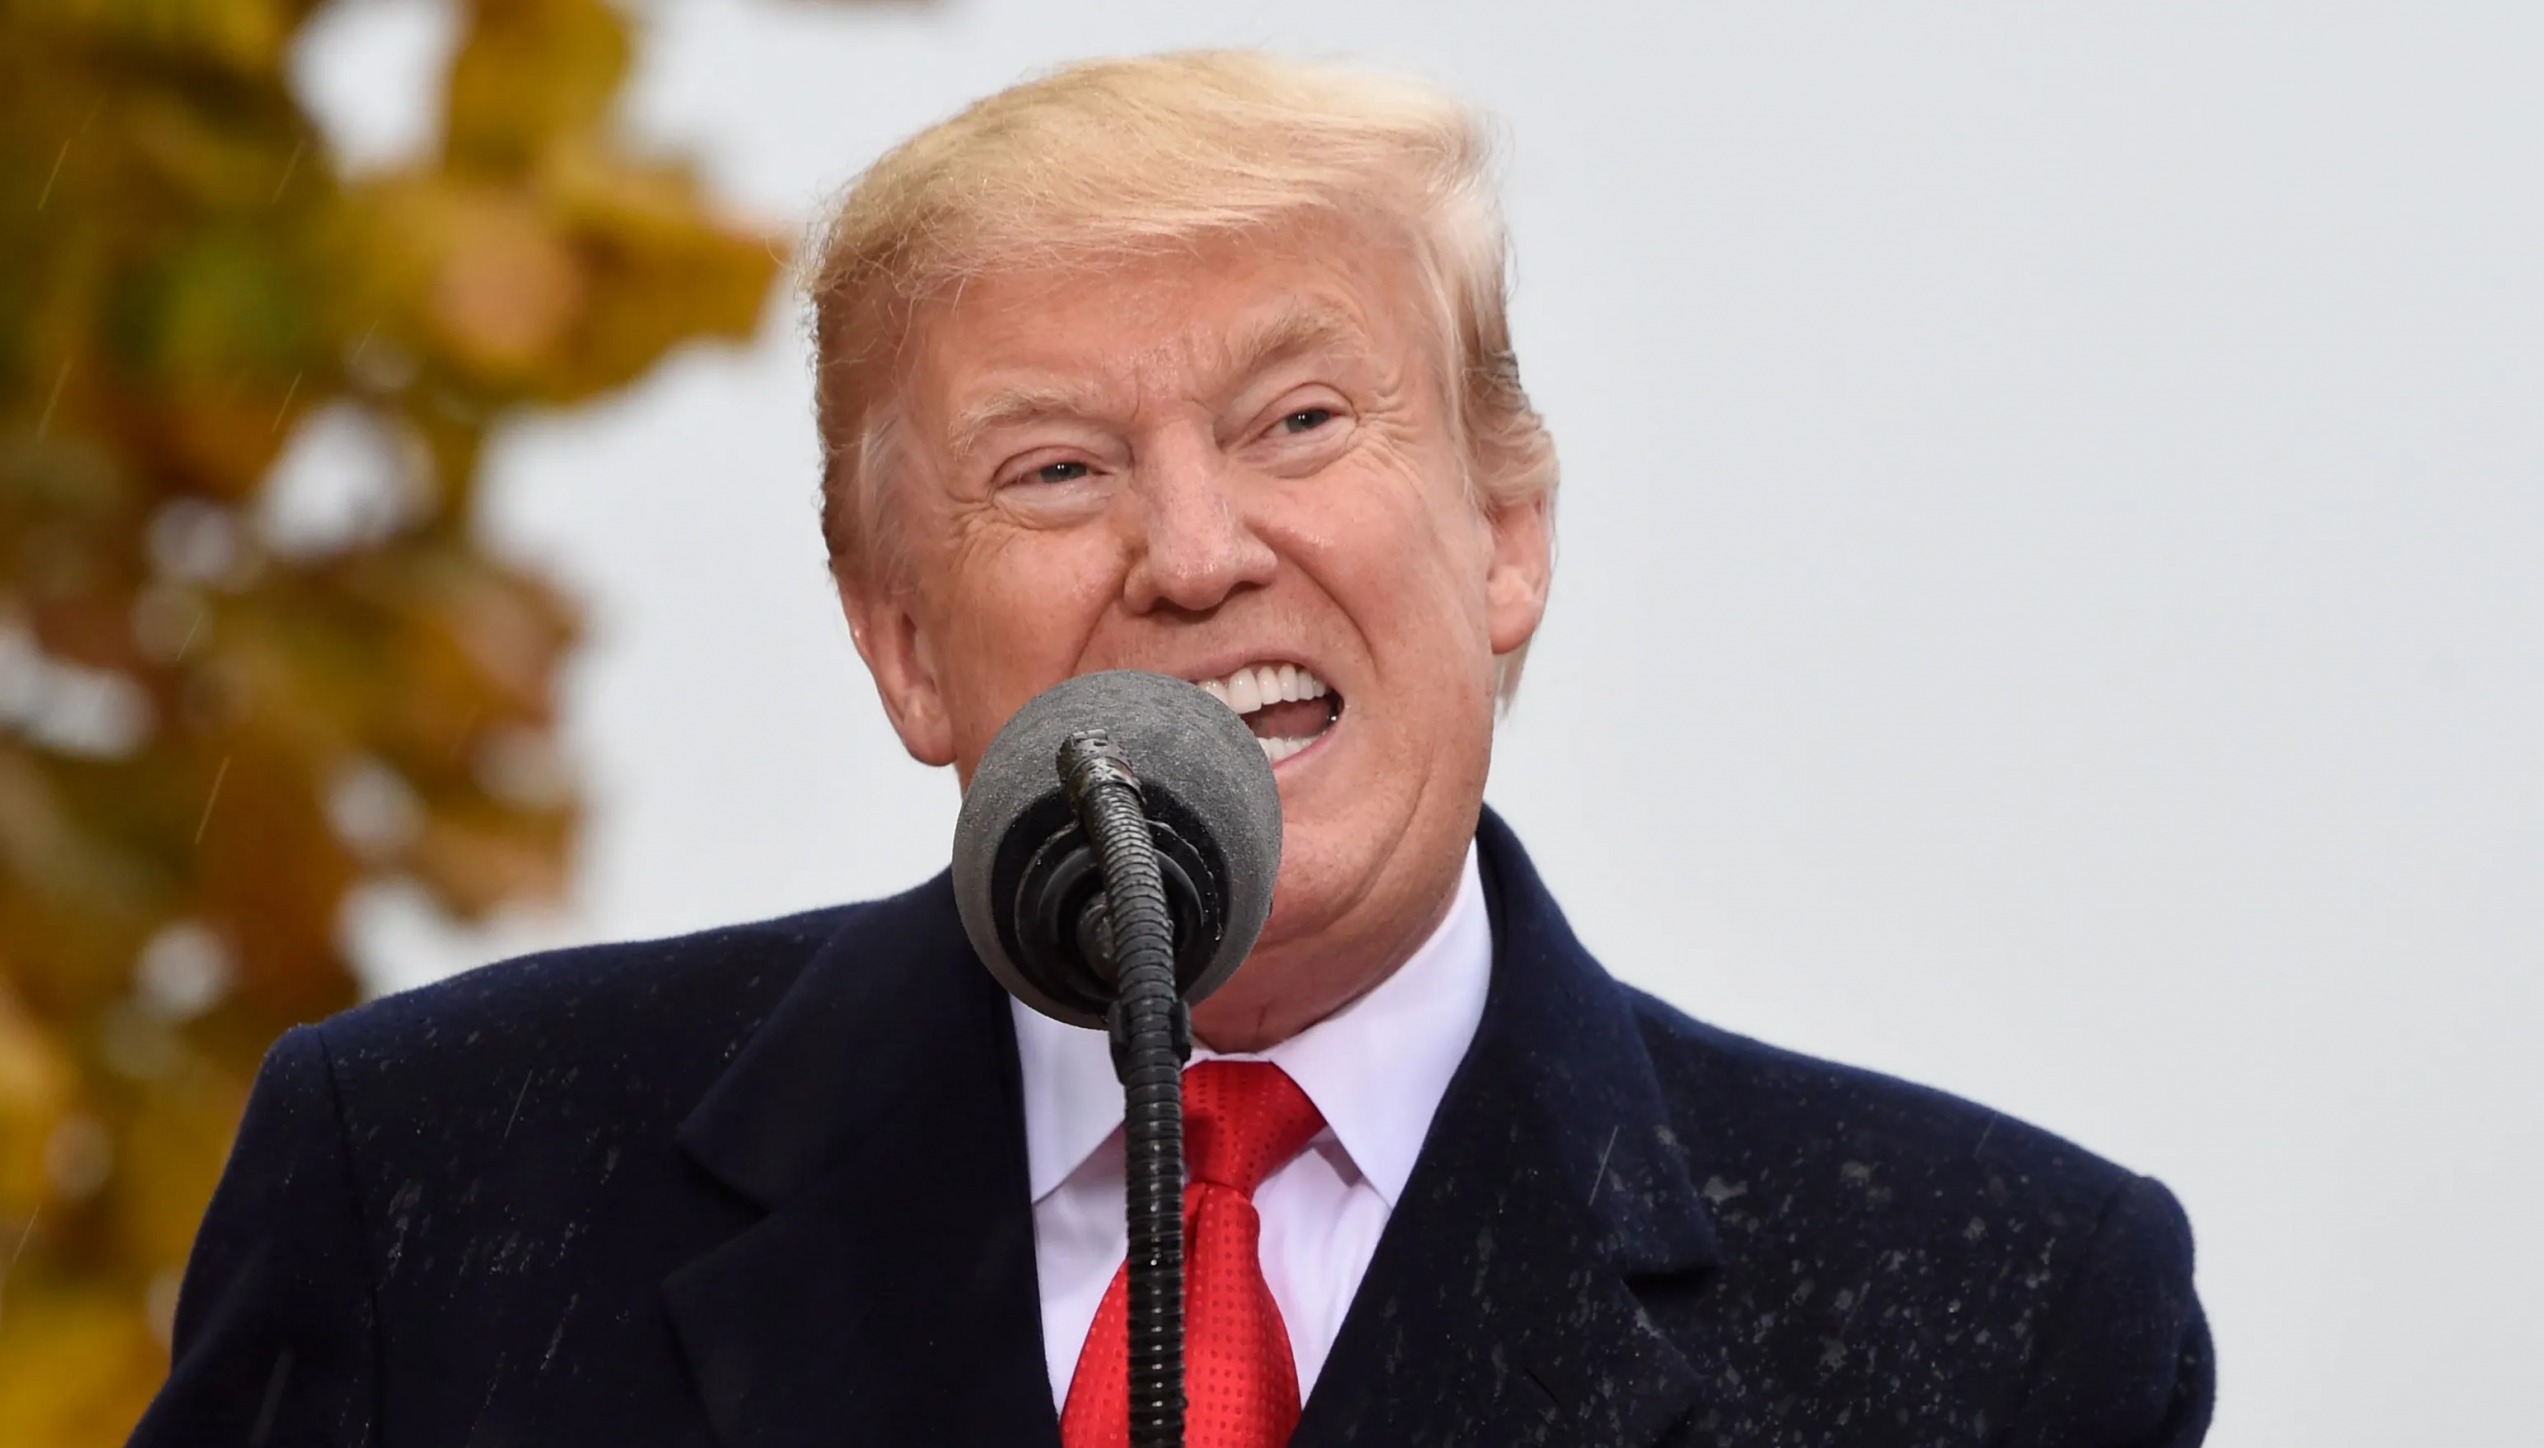 Trump an Ugly Face on an Ugly Man Blank Meme Template